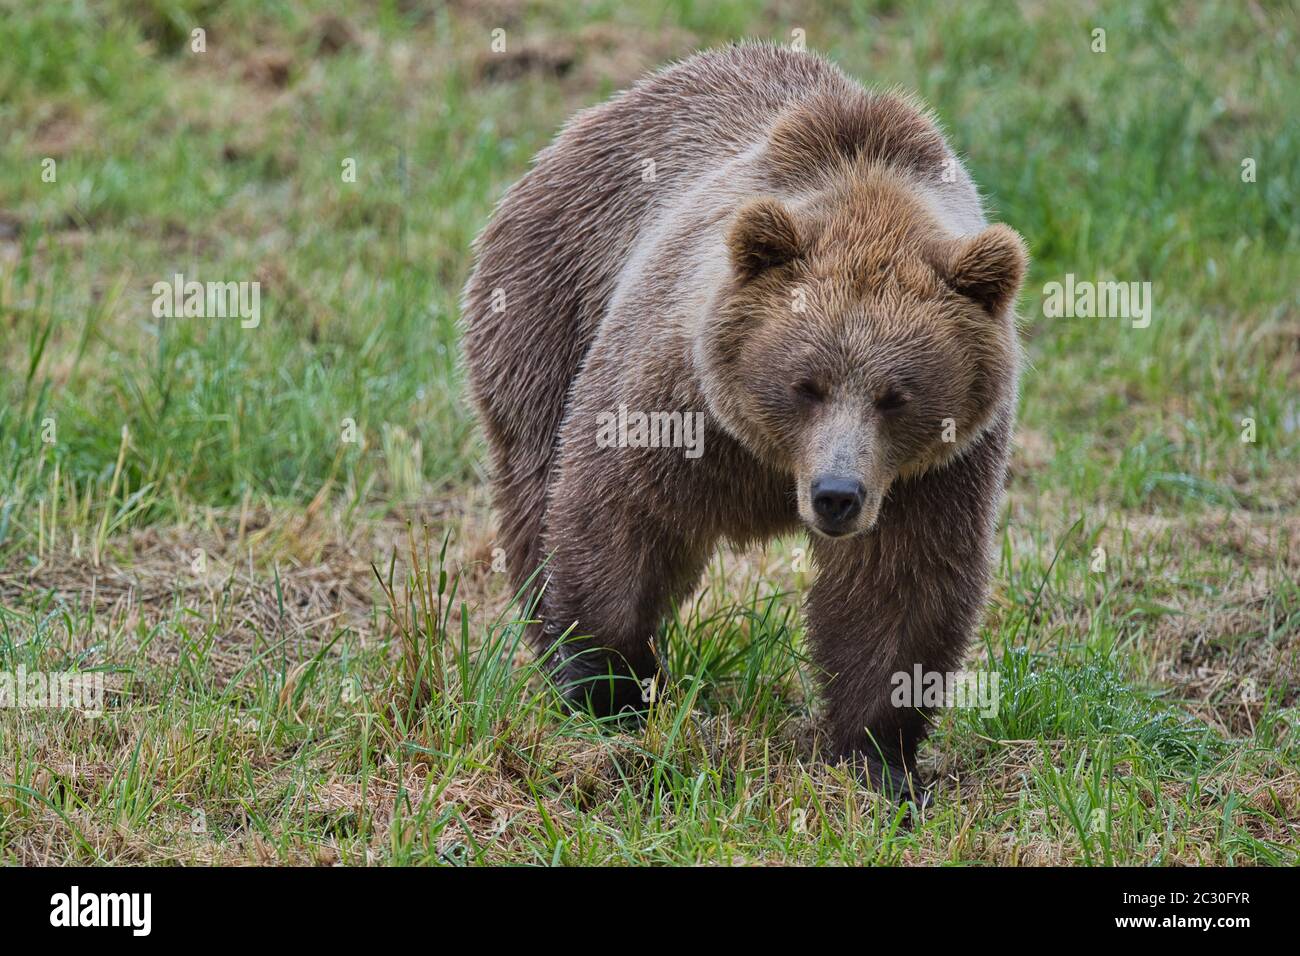 Braunbär, Braunbaer, Ursus arctos, Saeugetier, Brown bear, mammal, hunter, large, nature, european, Stock Photo